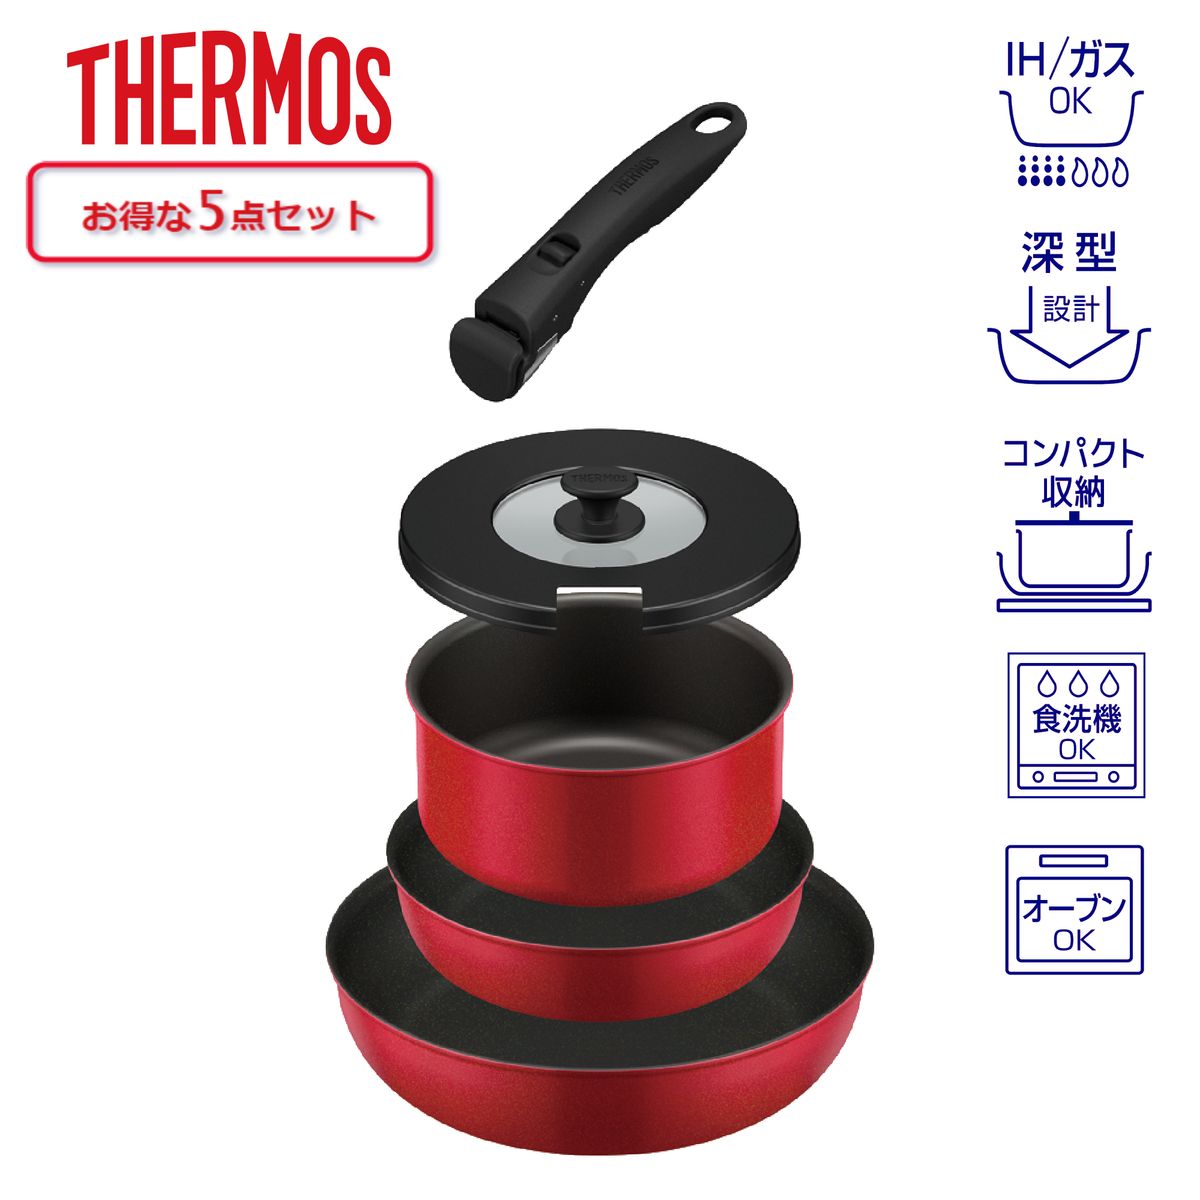 [IH・ガス火両対応]THERMOS 取っ手のとれるフライパン5点セット 蓋付 着脱式取っ手 レッド IH対応 食洗器対応